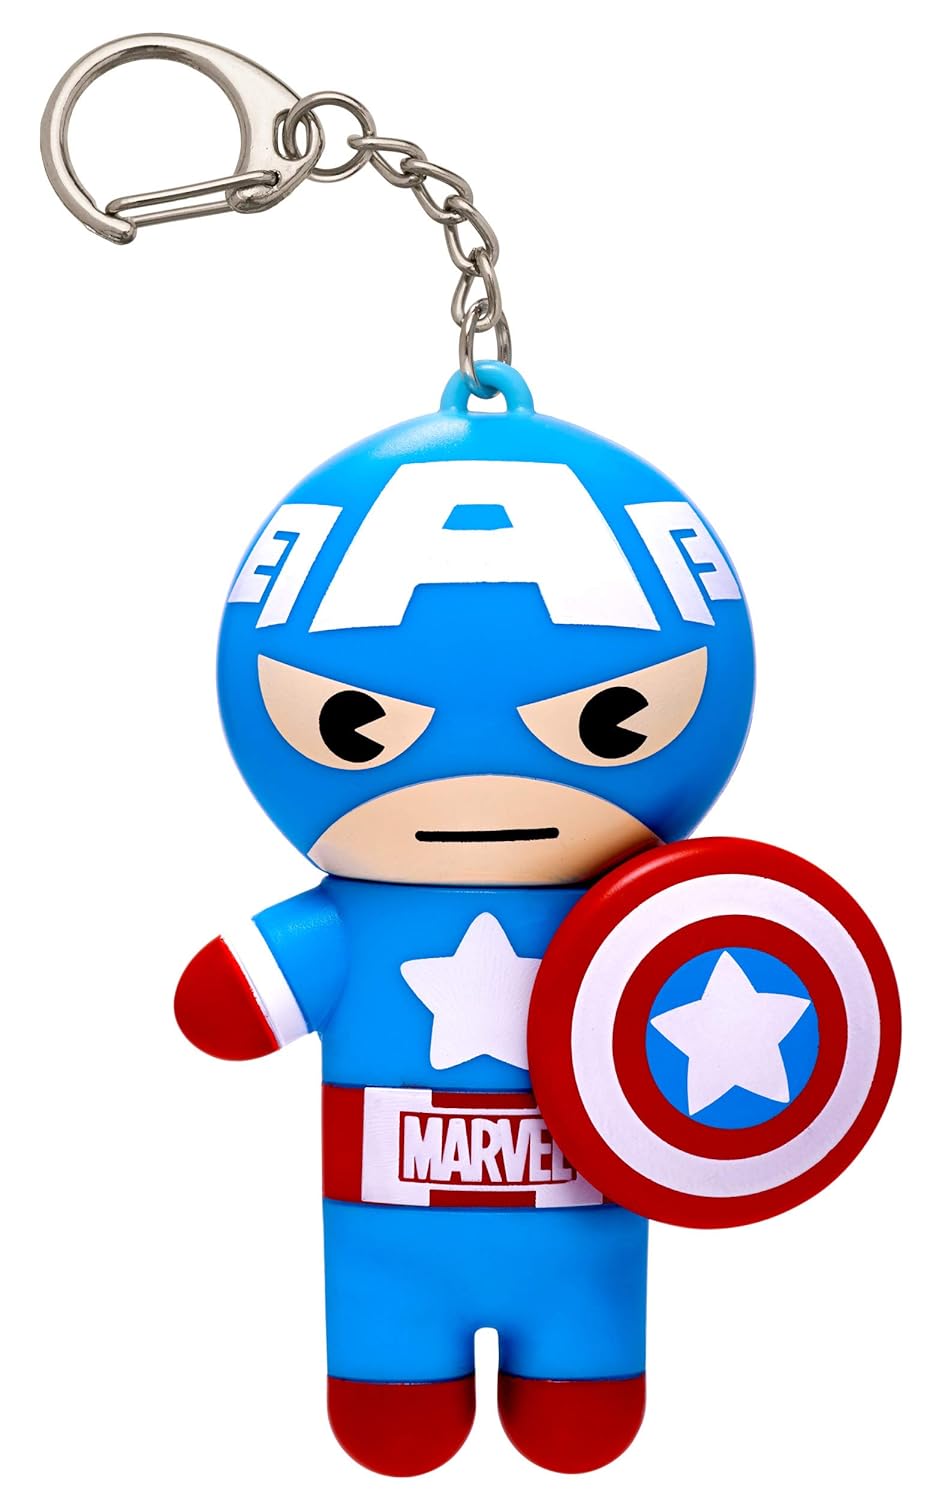 Lip Smacker Marvel, keychain, lip balm for kids - Captain America